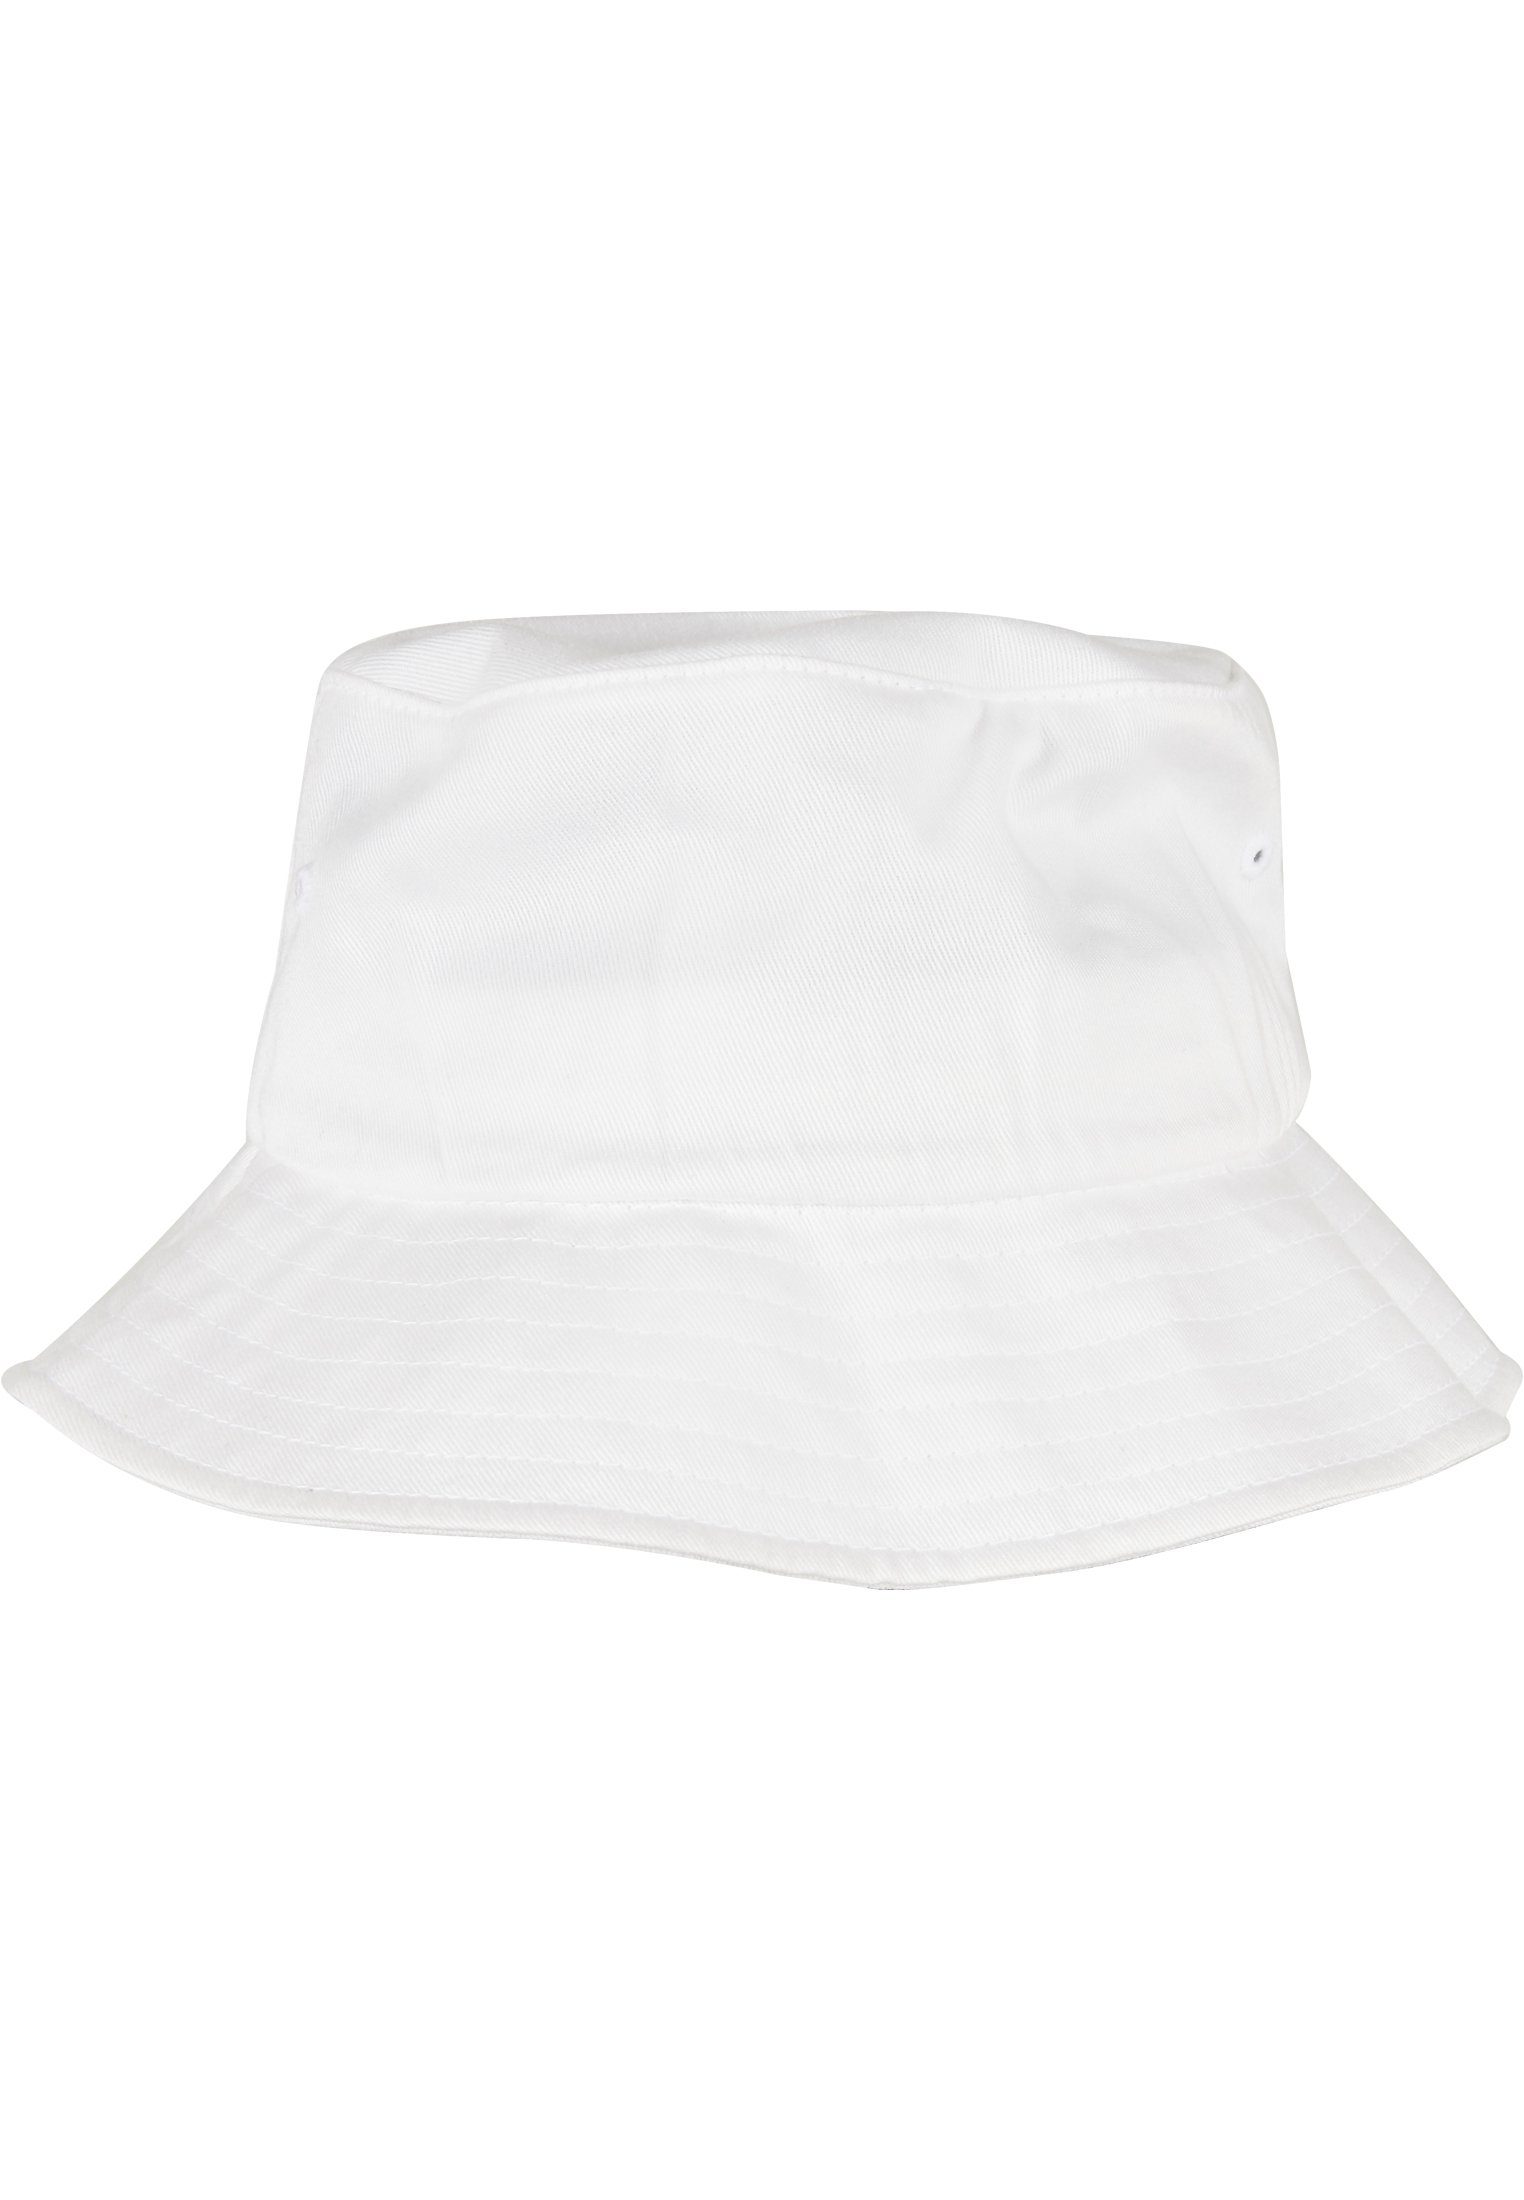 Accessoires Bucket Flex white Cap Organic Hat Flexfit Cotton